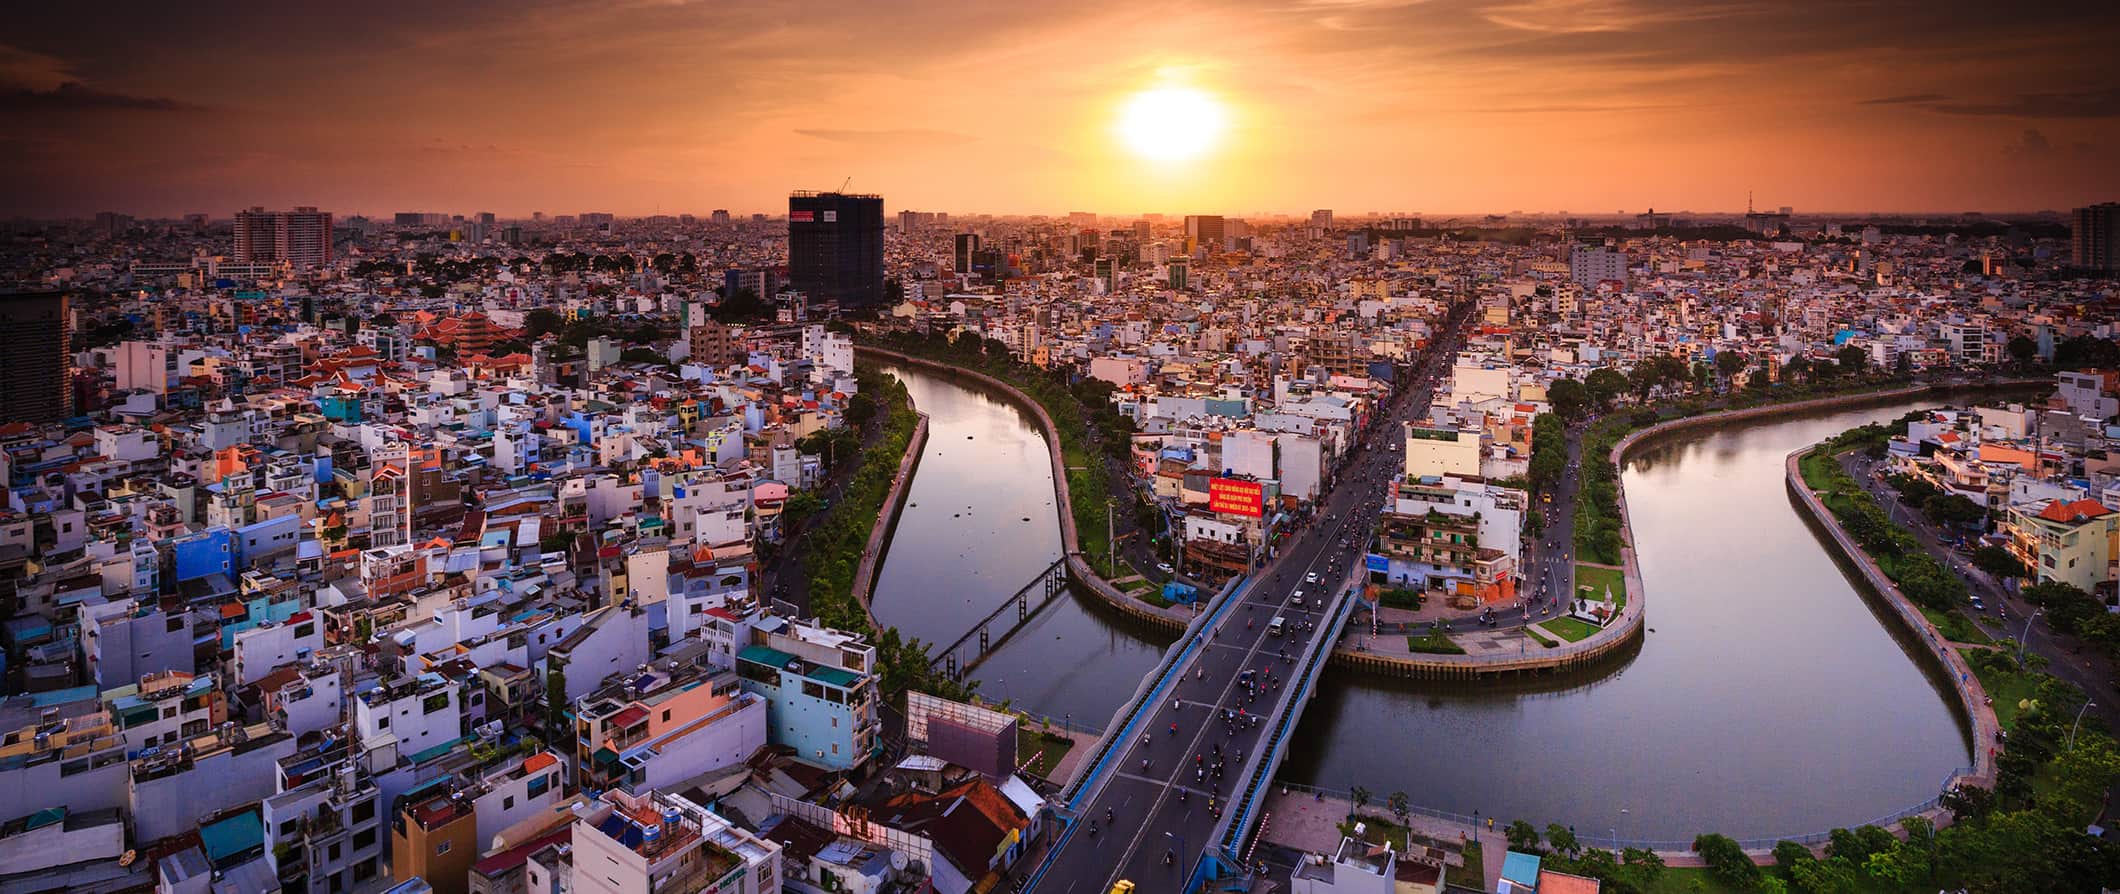 sunset over Ho Chi Minh City